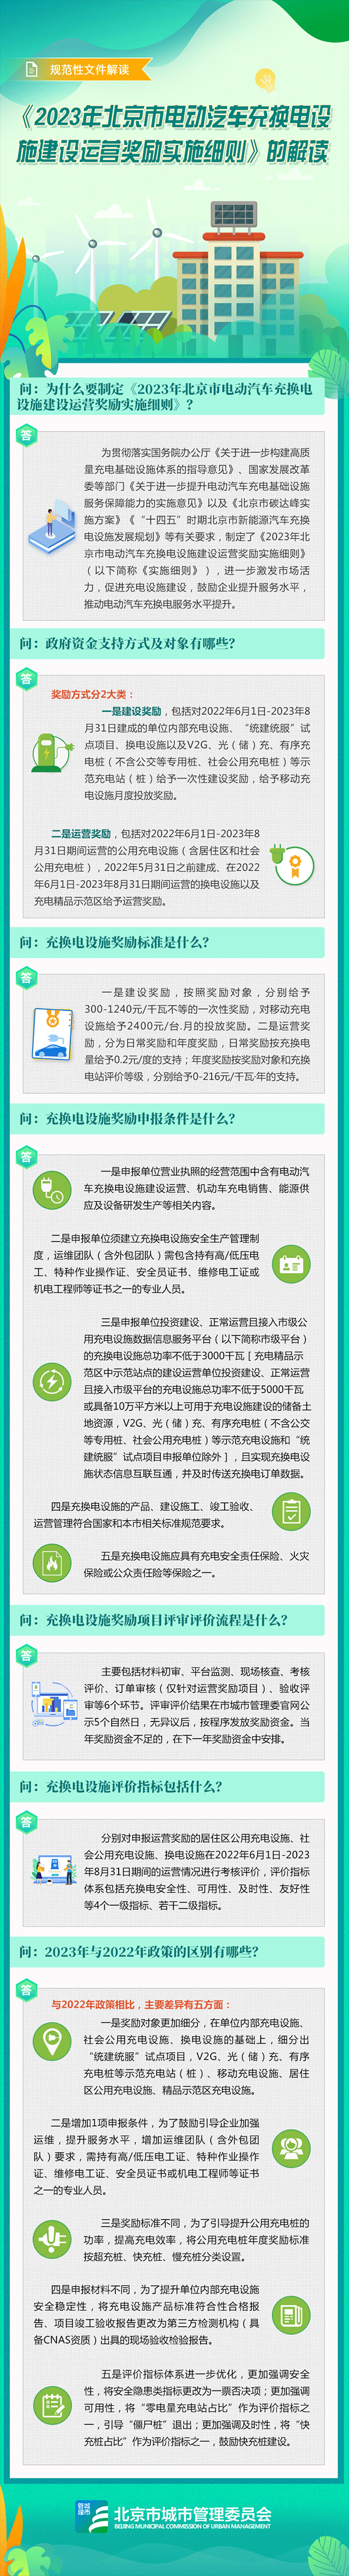 北京发布2023年电动汽车充换电设施建设运营奖励实施细则